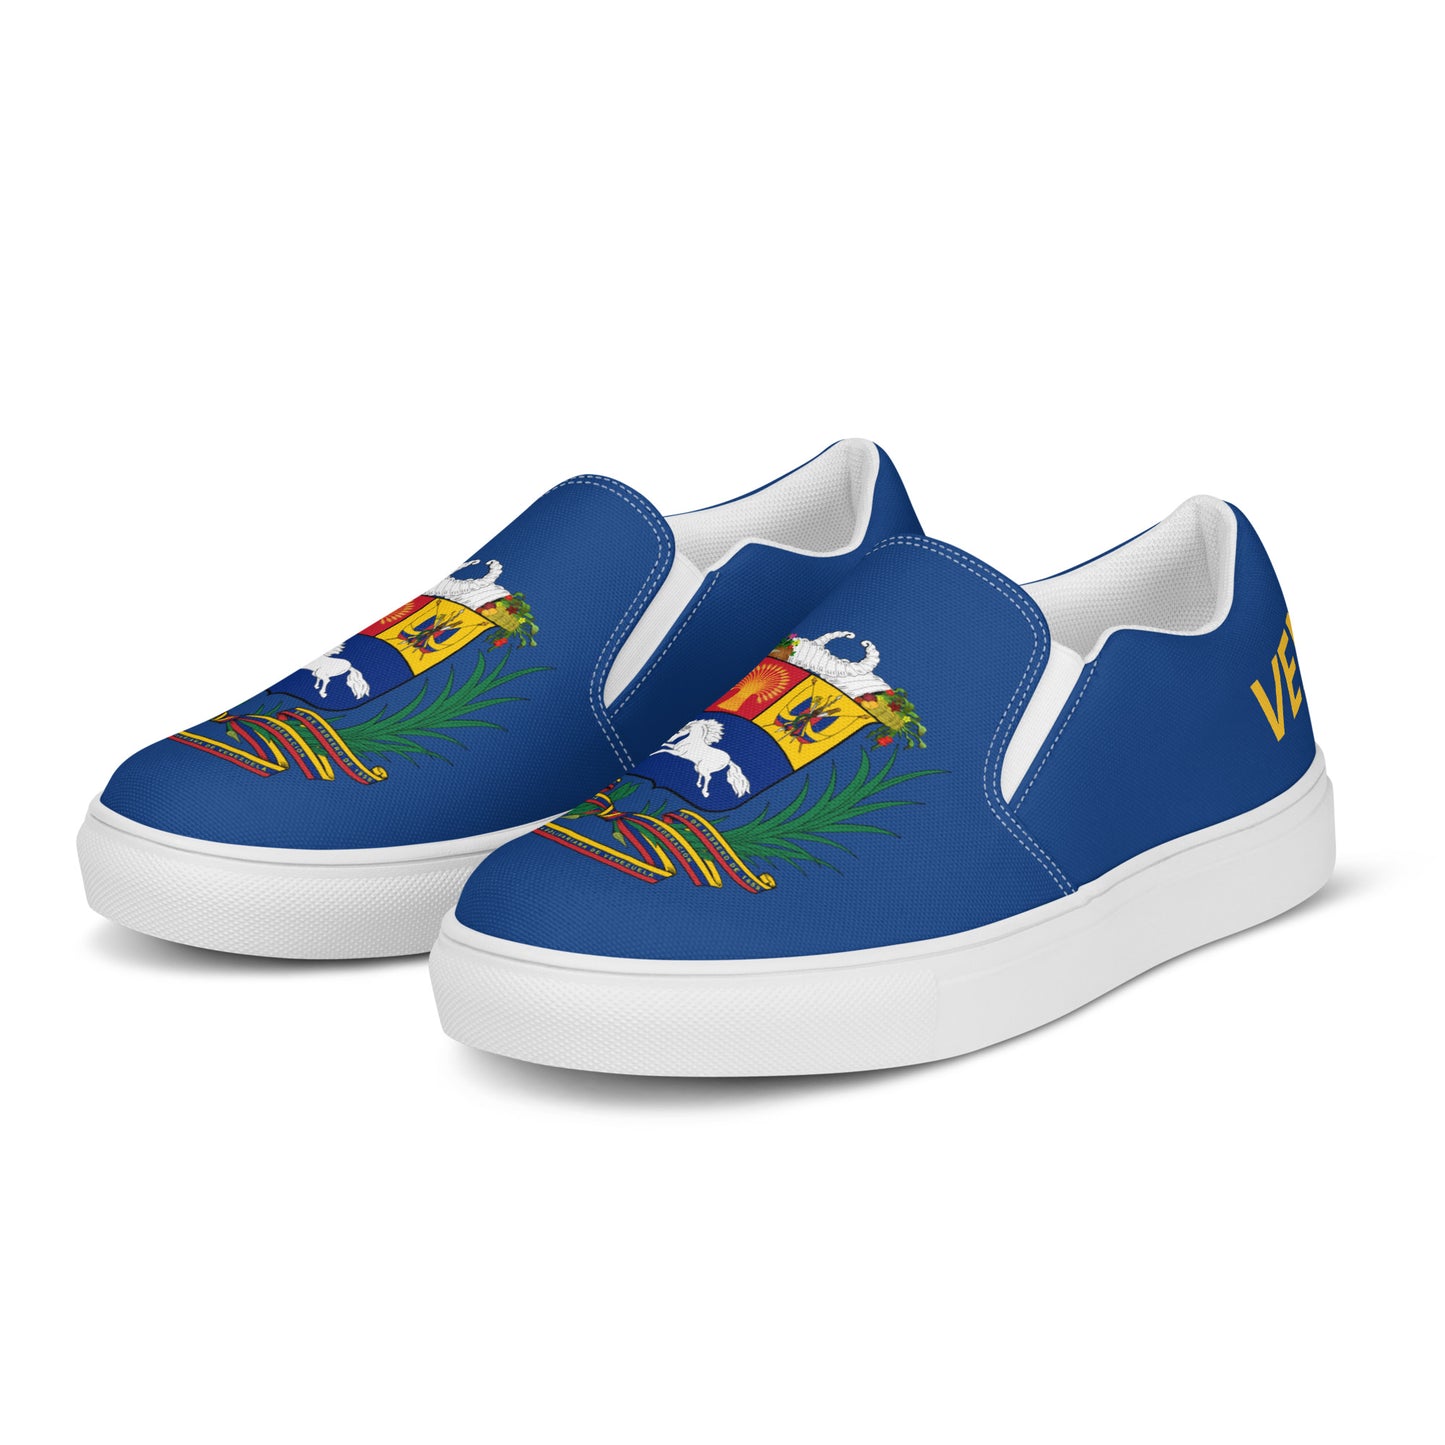 Venezuela - Men - Blue - Slip-on shoes